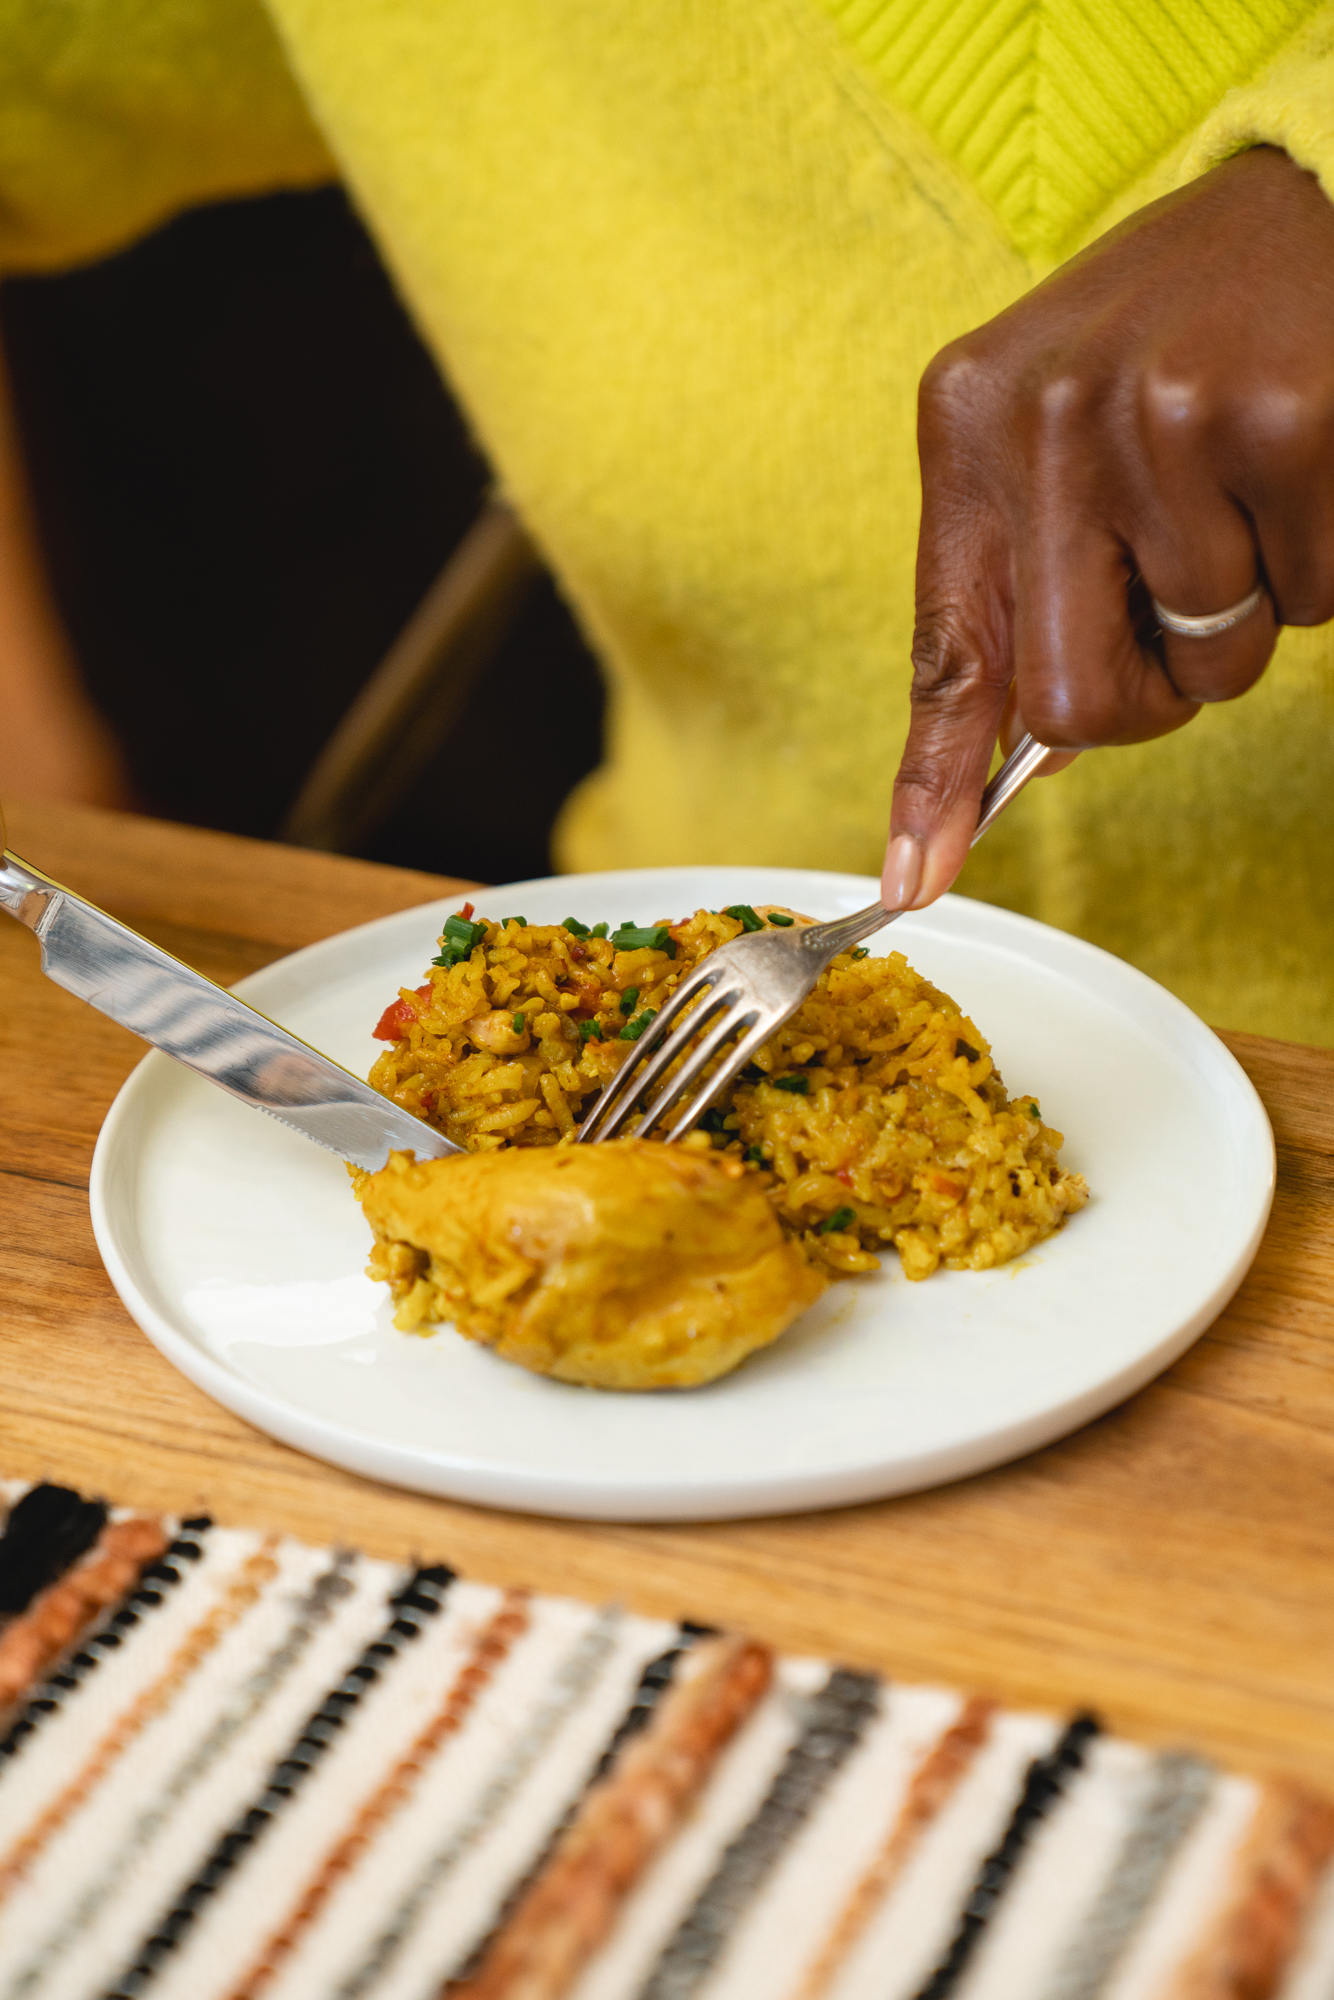 Turmeric chicken and rice recipe - Maya Feller Nutrition